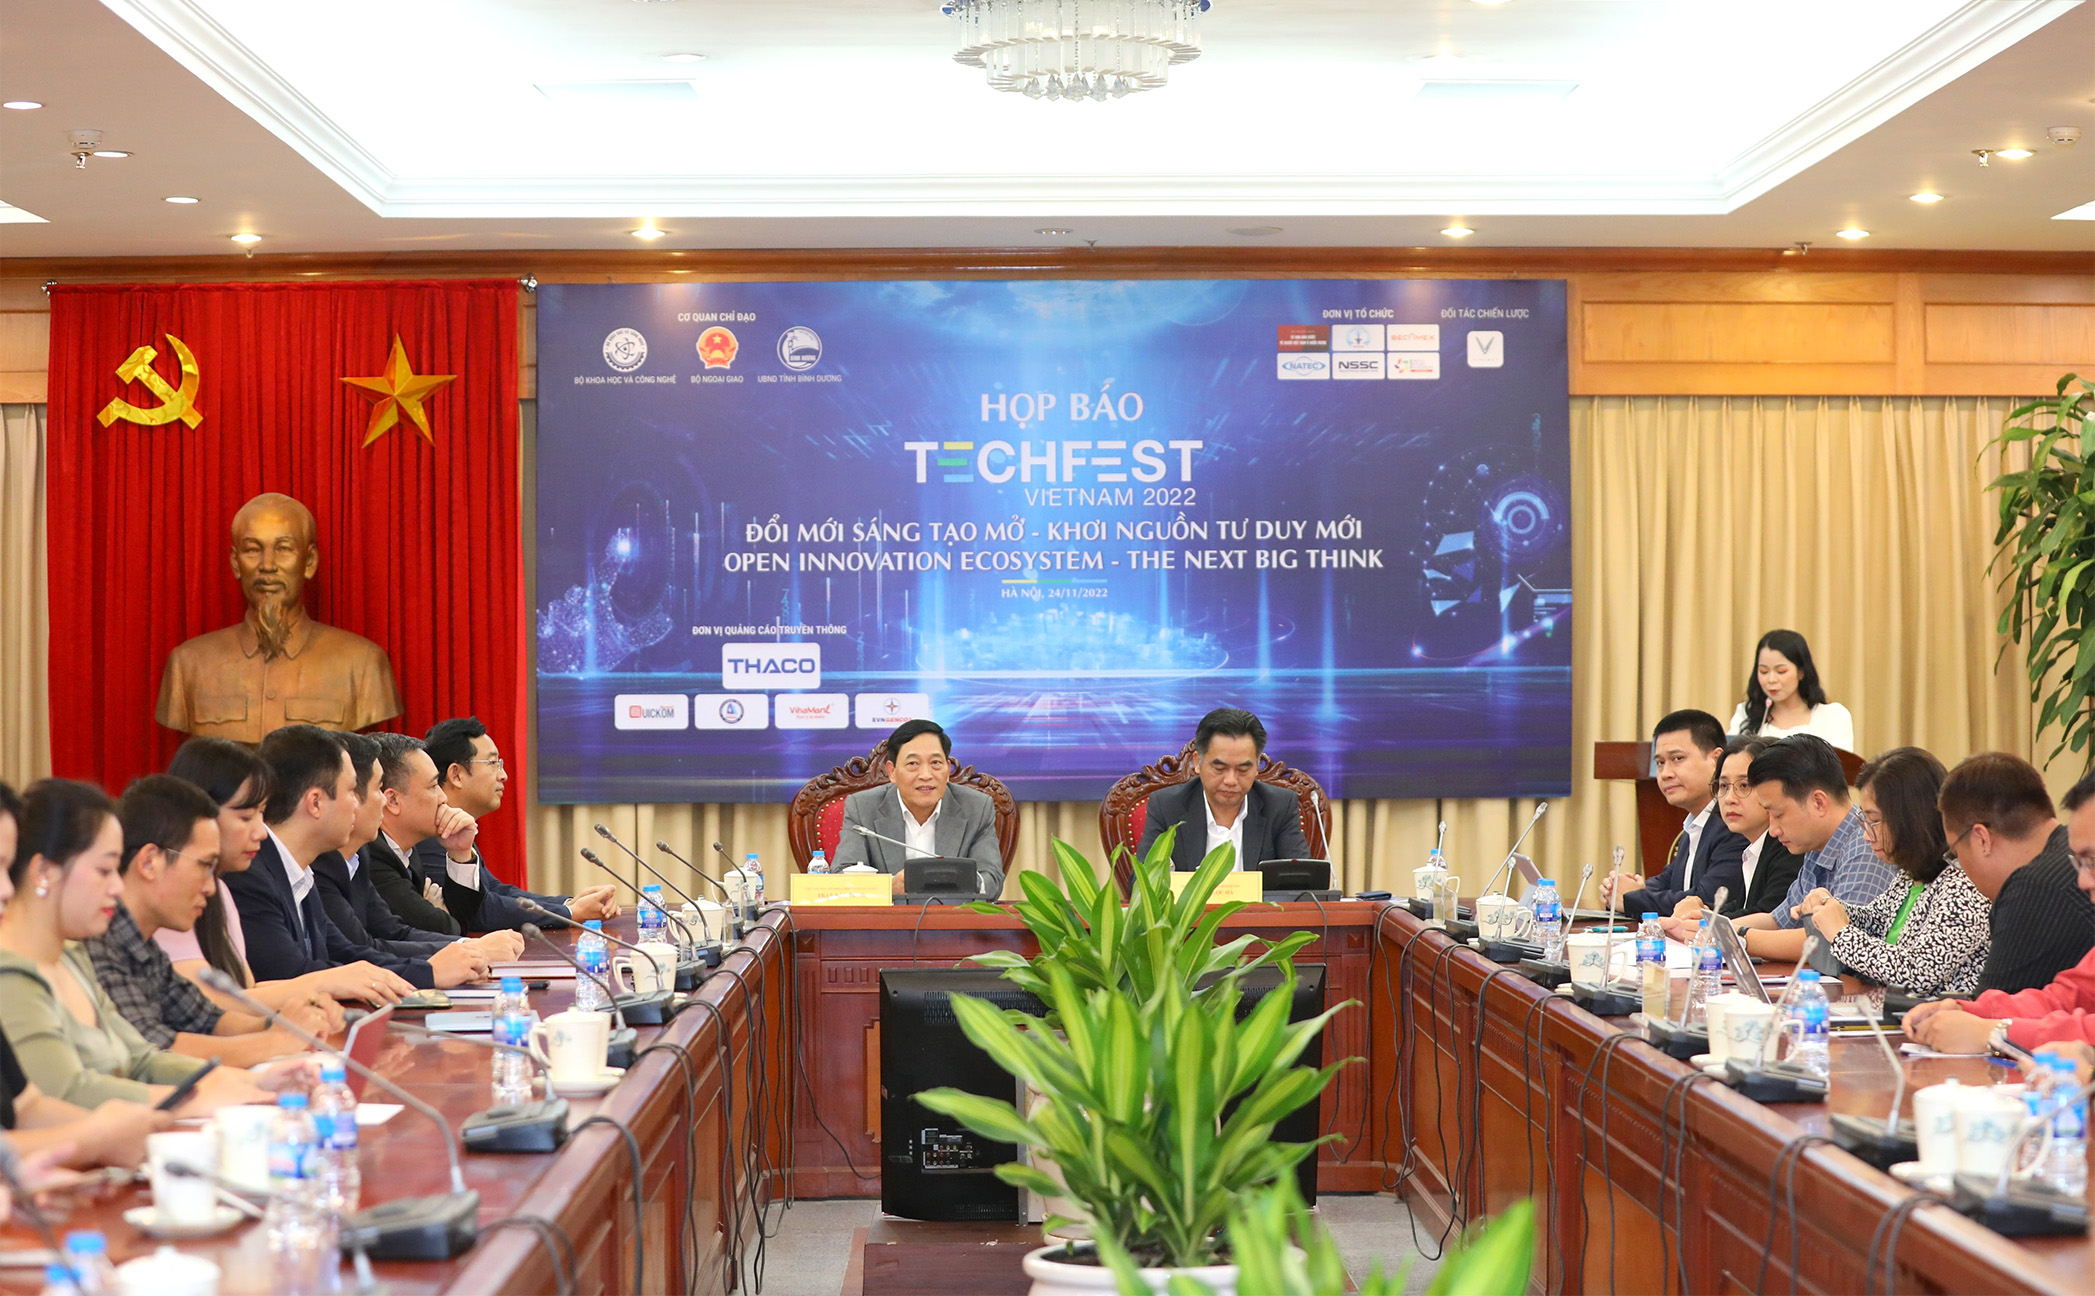 Quang cảnh buổi họp báo TECHFEST 2022.